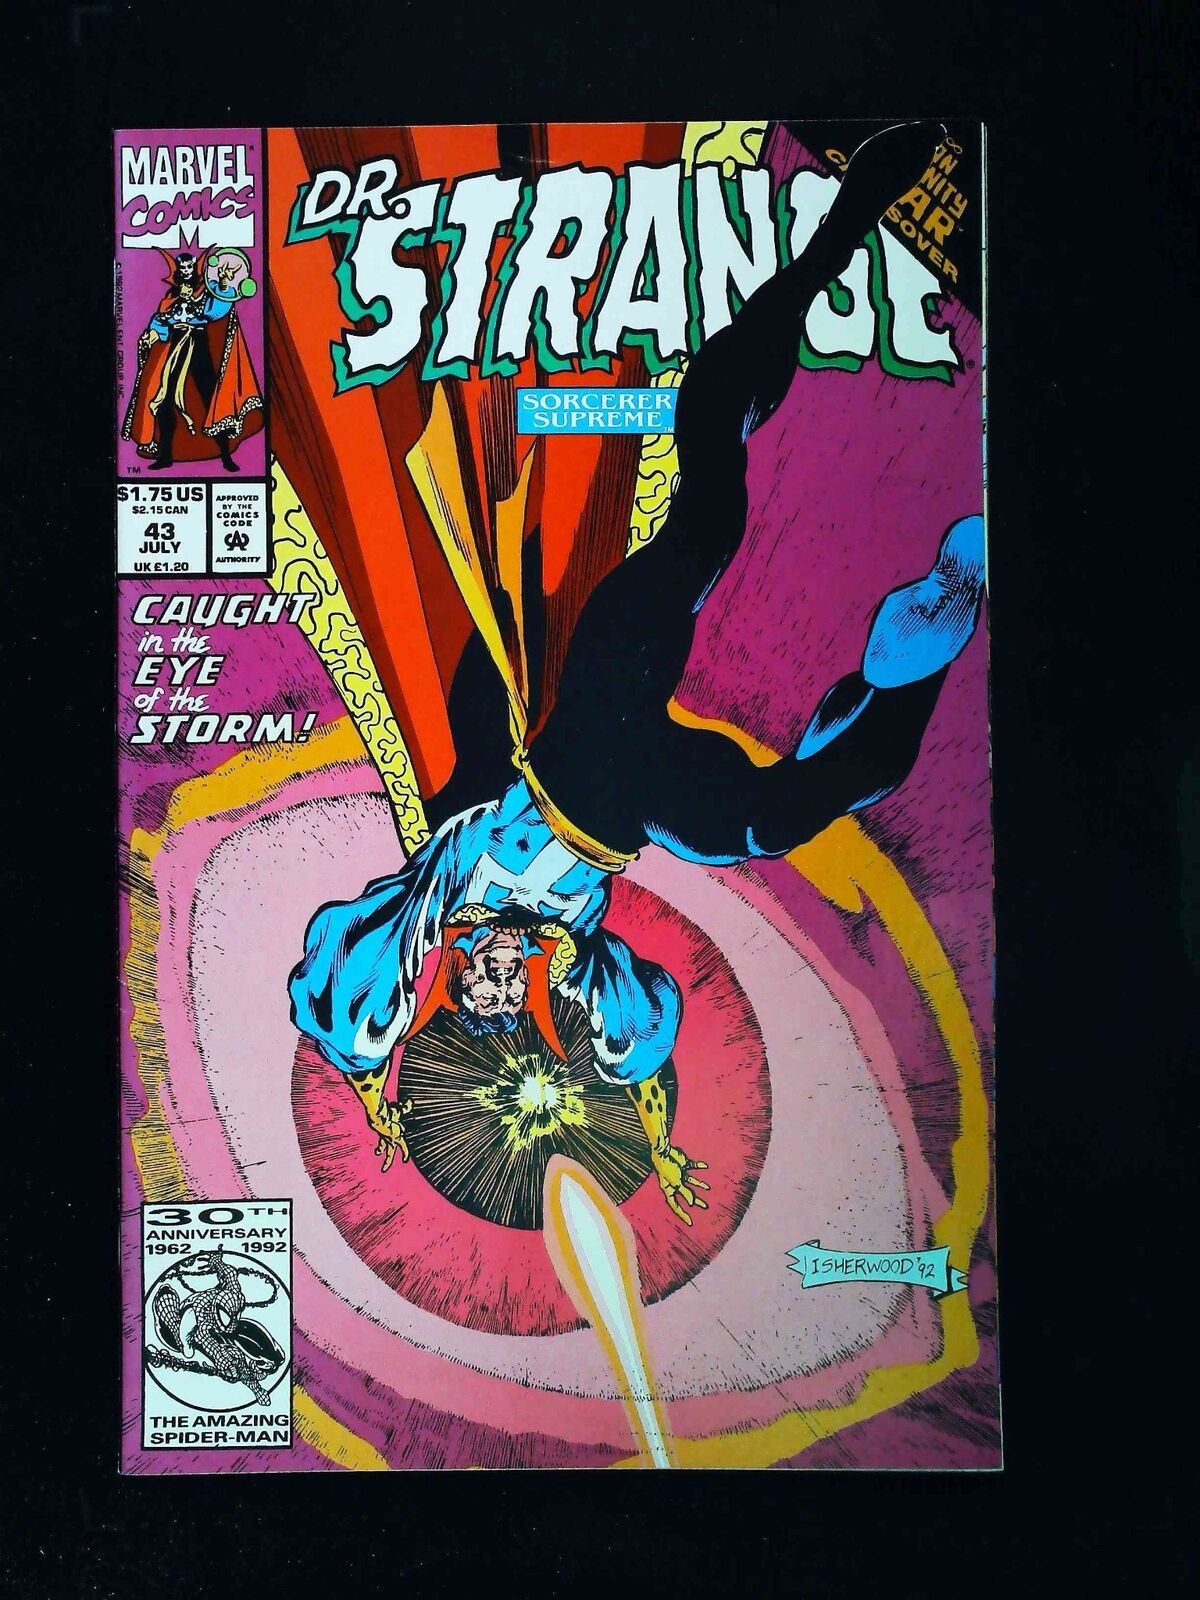 Doctor Strange #43 (3Rd Series) Marvel Comics 1992 Vf+